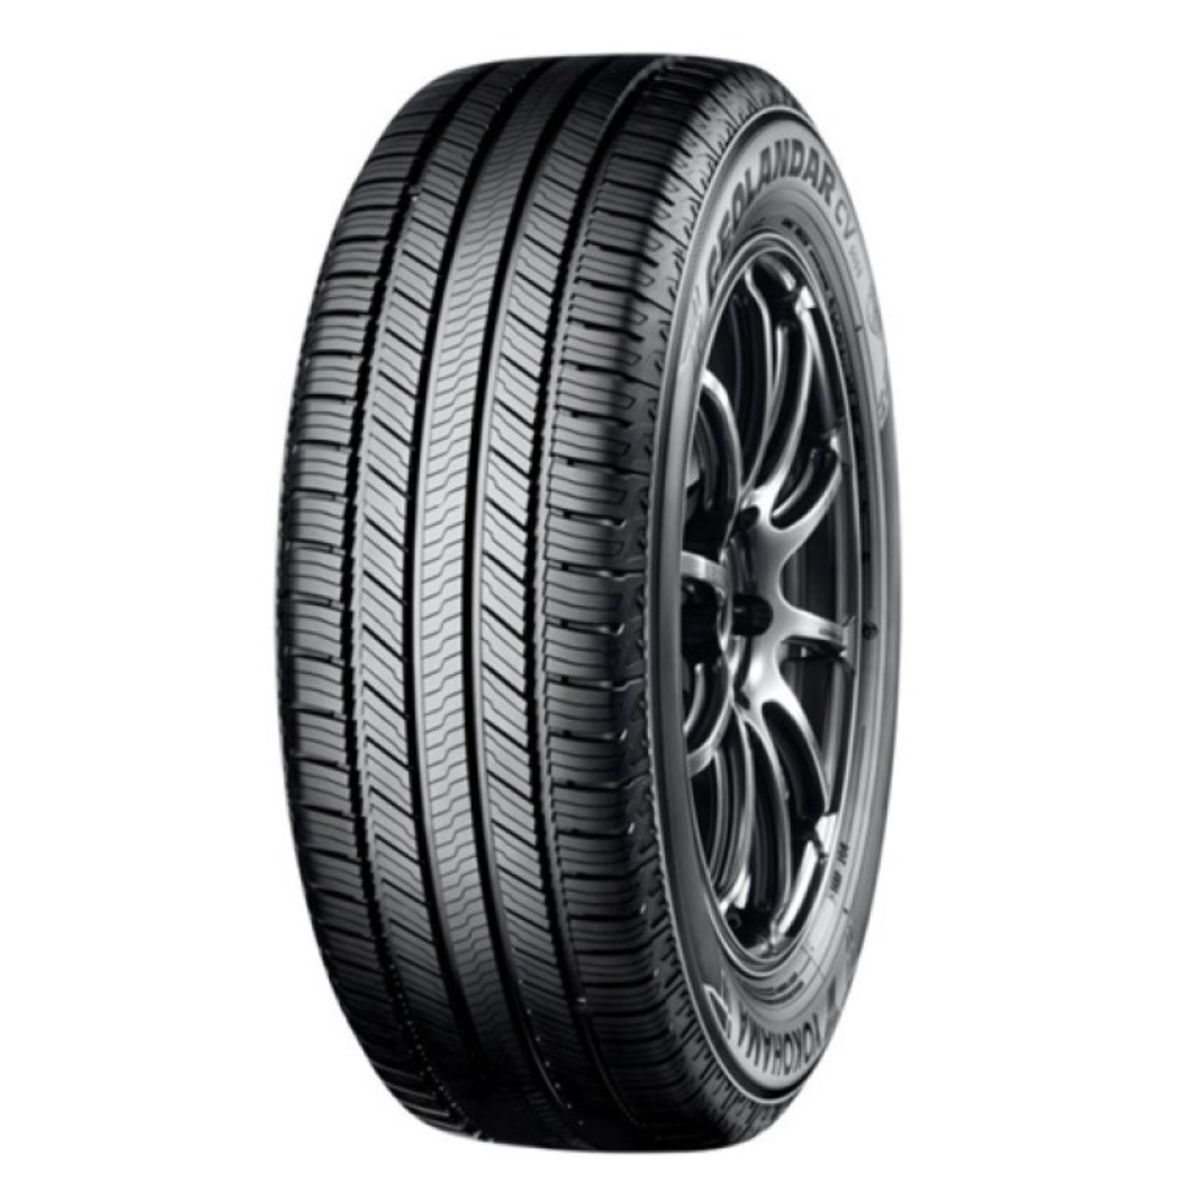 Neumáticos de verano YOKOHAMA Geolandar CV G058 255/55R18 XL 109V